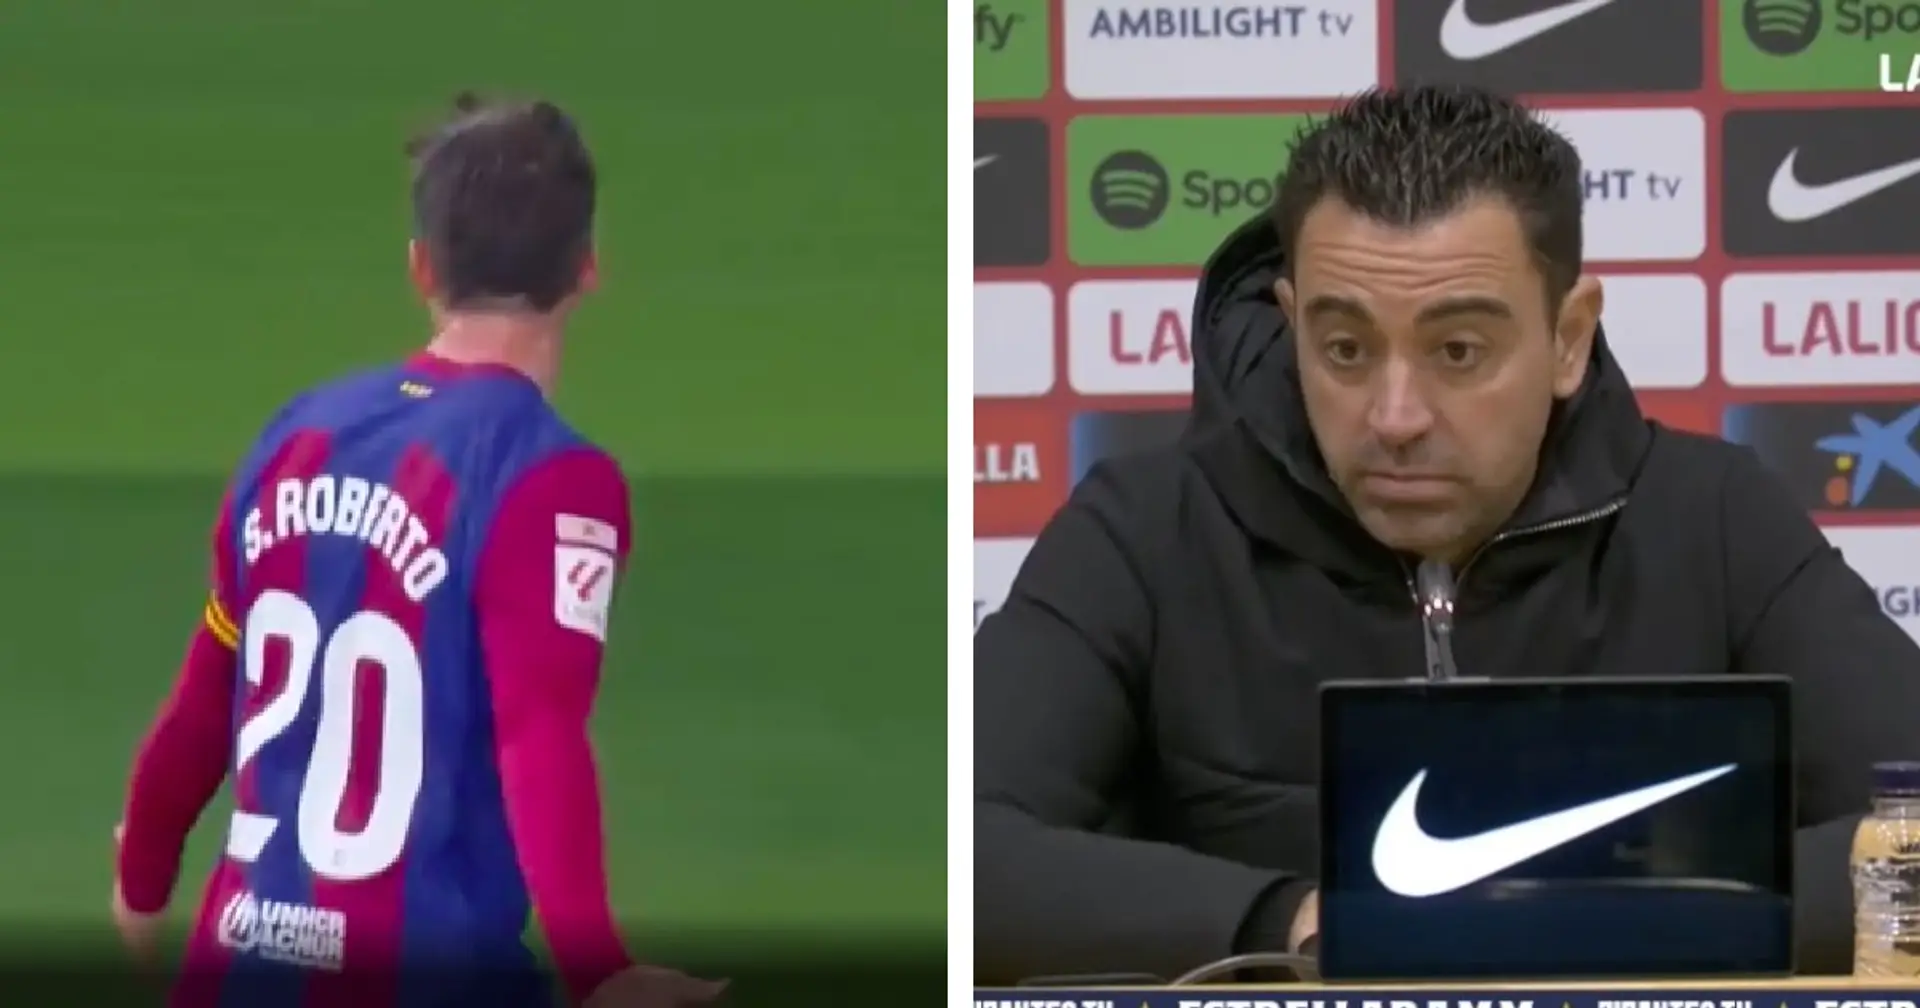 Xavi names player who 'gave Barca win' over Almeria - not Sergi Roberto